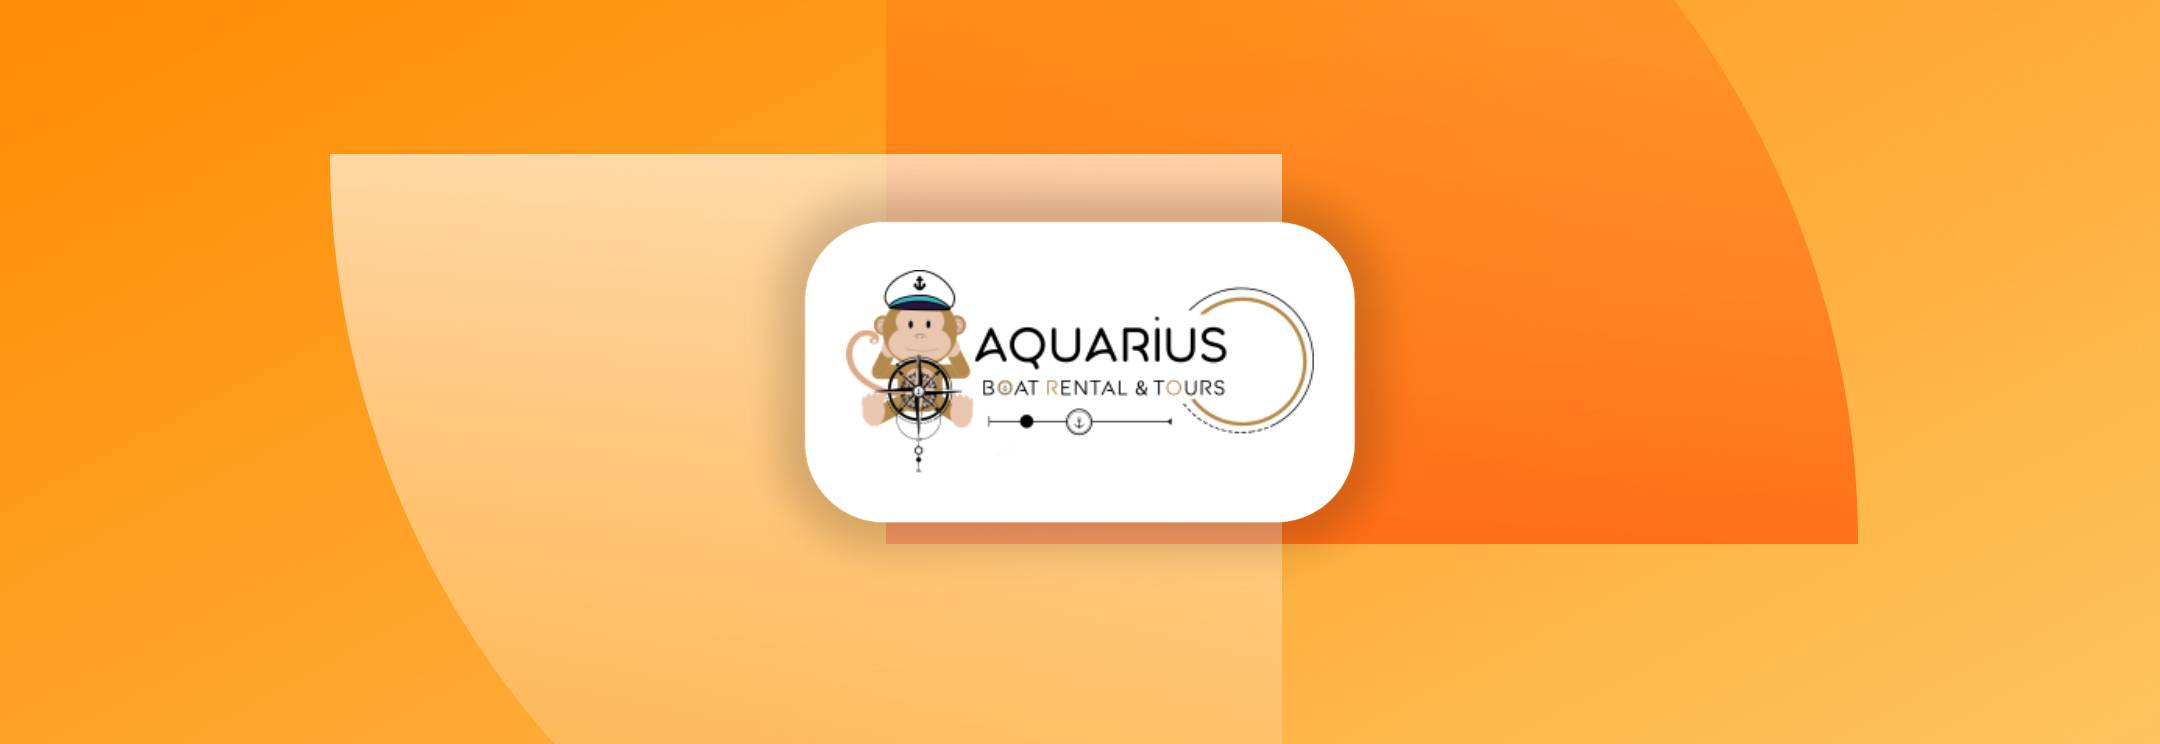 Client Aquarius Boat Rental Marketing Ingenious